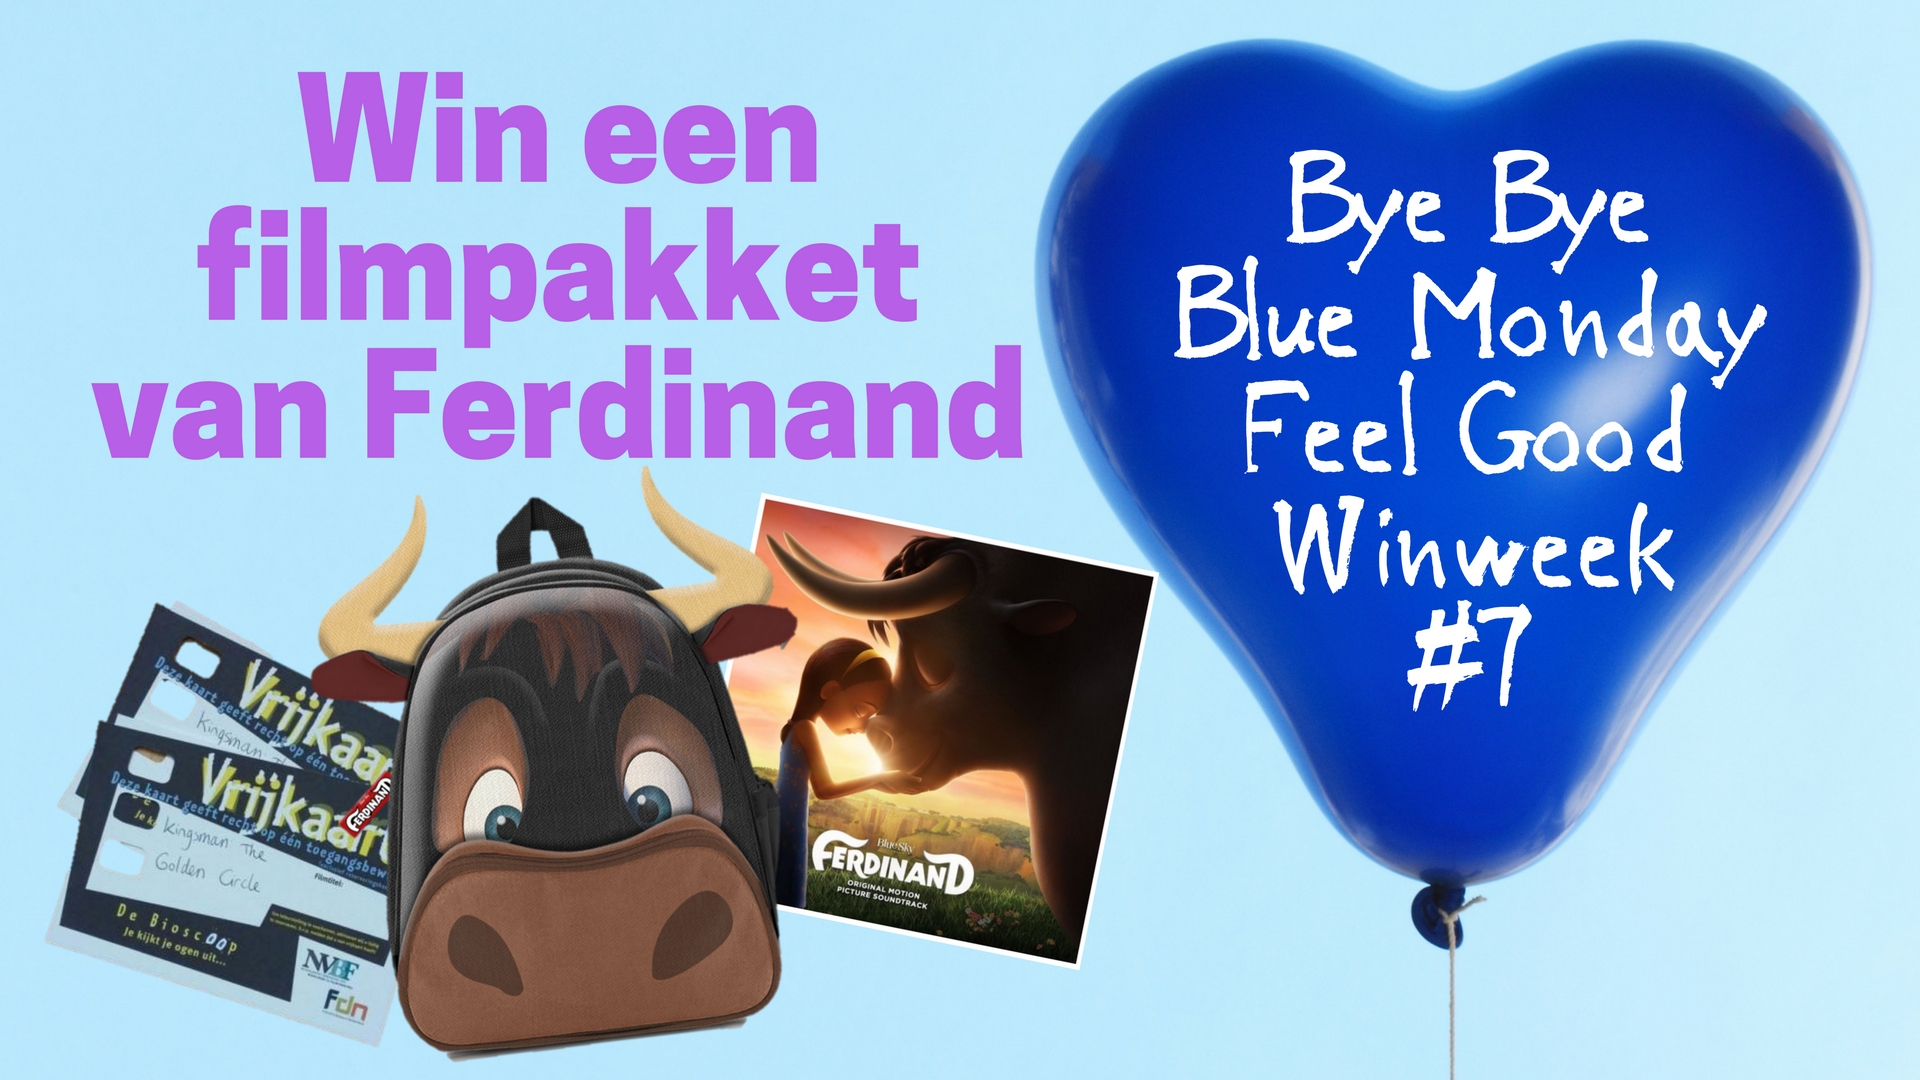 Bye Bye Blue Monday #7 Ferdinand